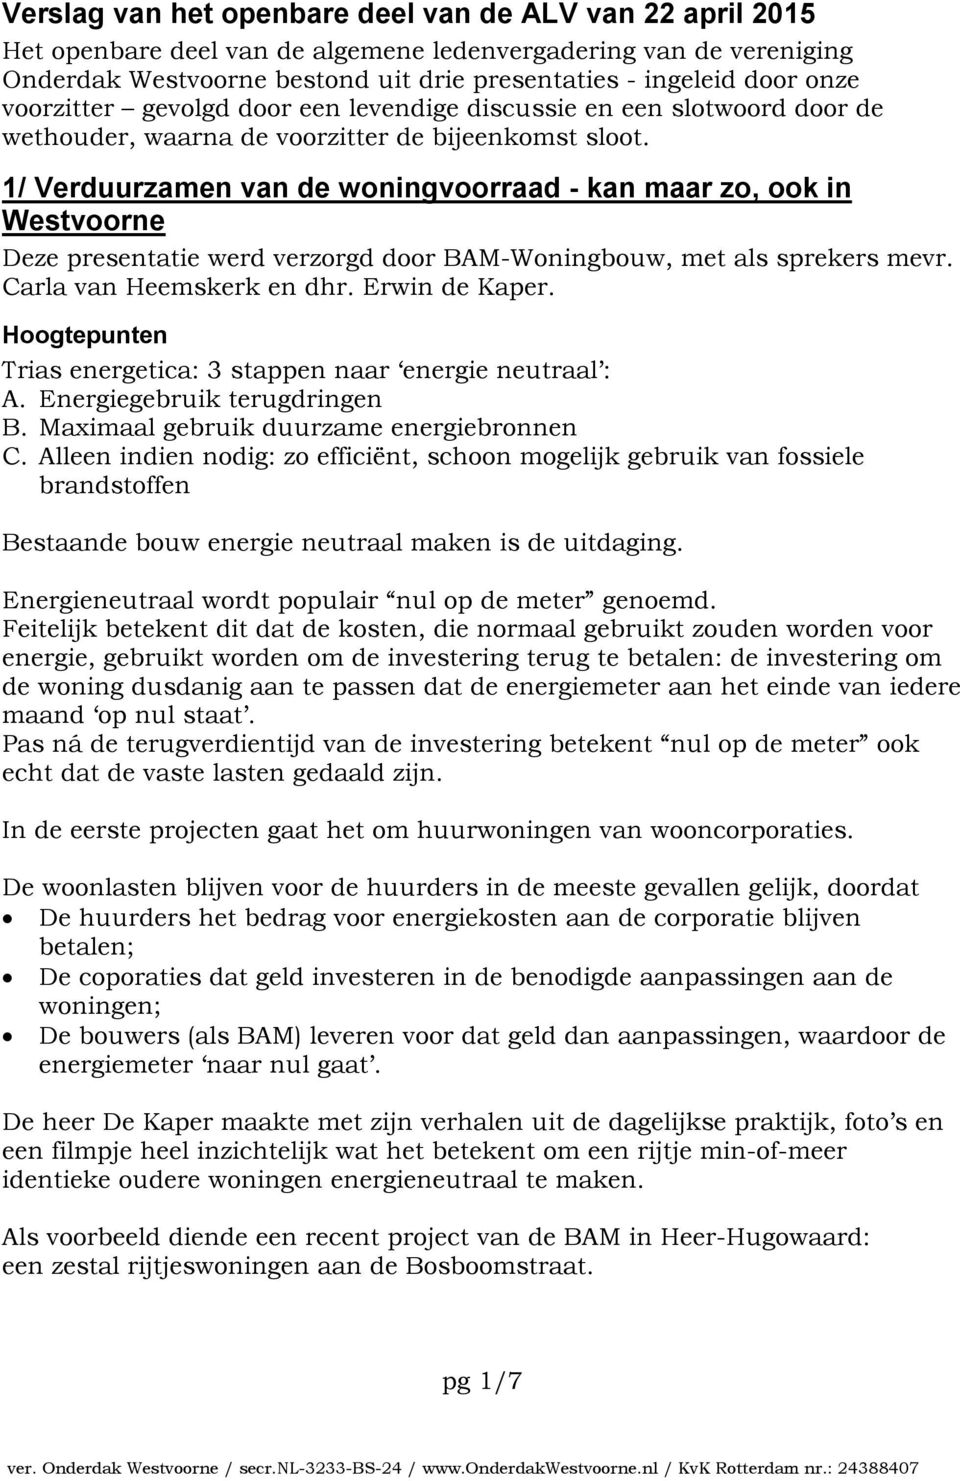 1/ Verduurzamen van de woningvoorraad - kan maar zo, ook in Westvoorne Deze presentatie werd verzorgd door BAM-Woningbouw, met als sprekers mevr. Carla van Heemskerk en dhr. Erwin de Kaper.